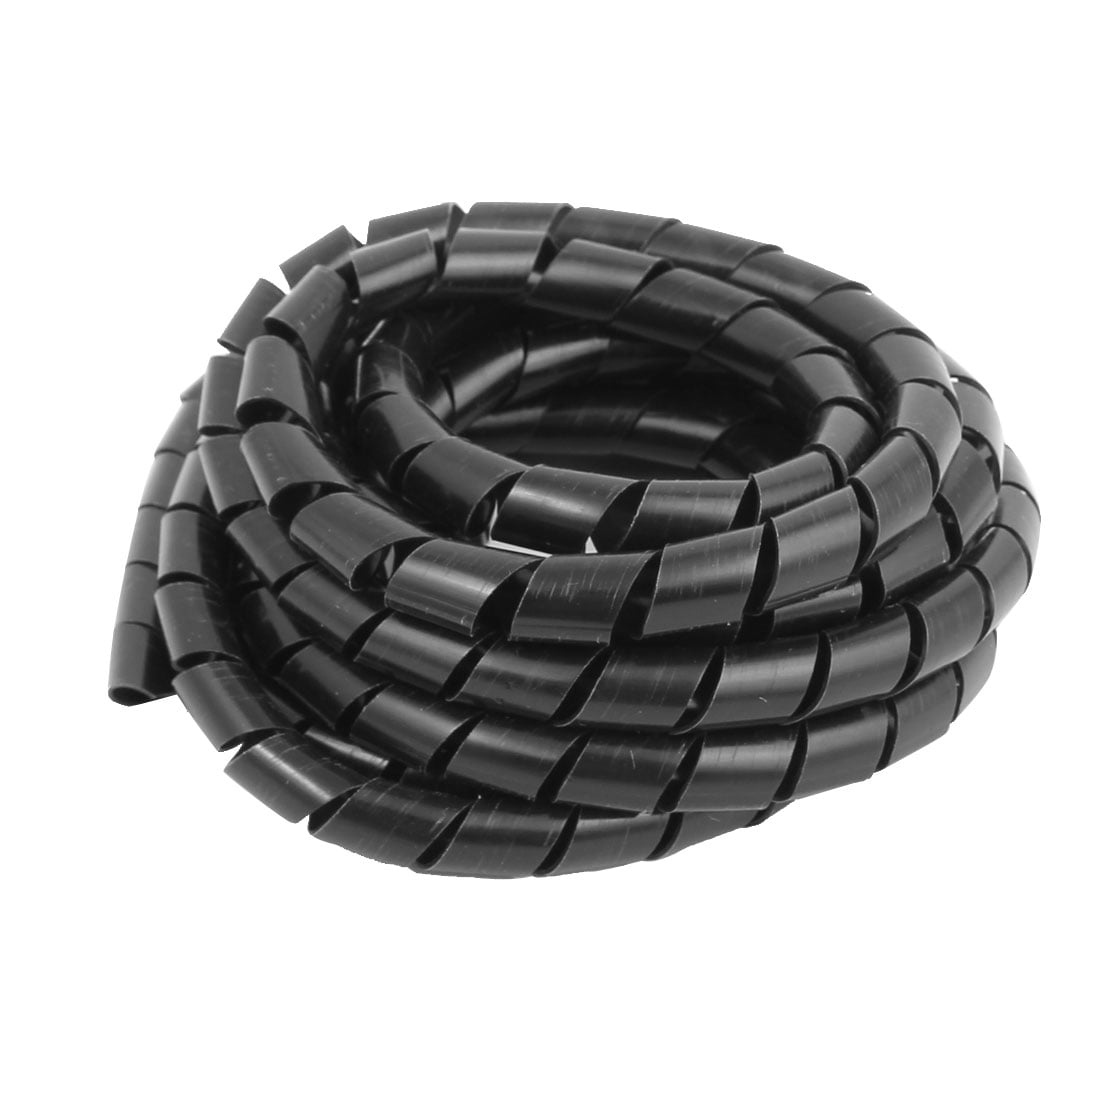 Tuyau de gestion de câbles en spirale noir enroulé, flexible recouvert de  cordon de protection pour bureau, ordinateur, télévision et voiture